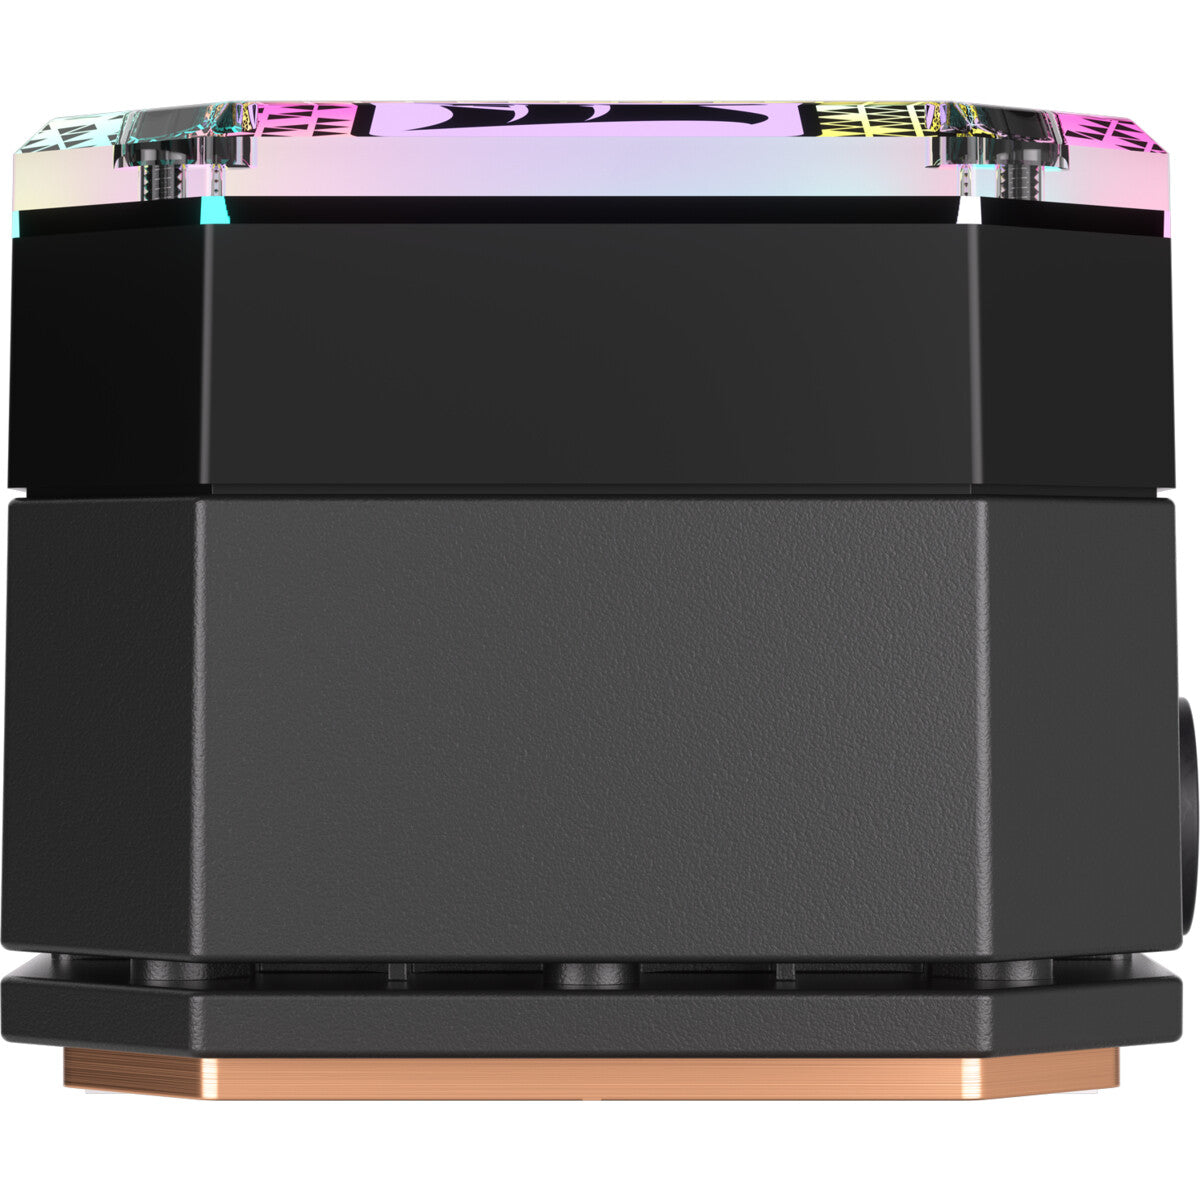 Corsair iCUE H170i Elite - All-in-one Liquid Processor Cooler in Black - 420mm